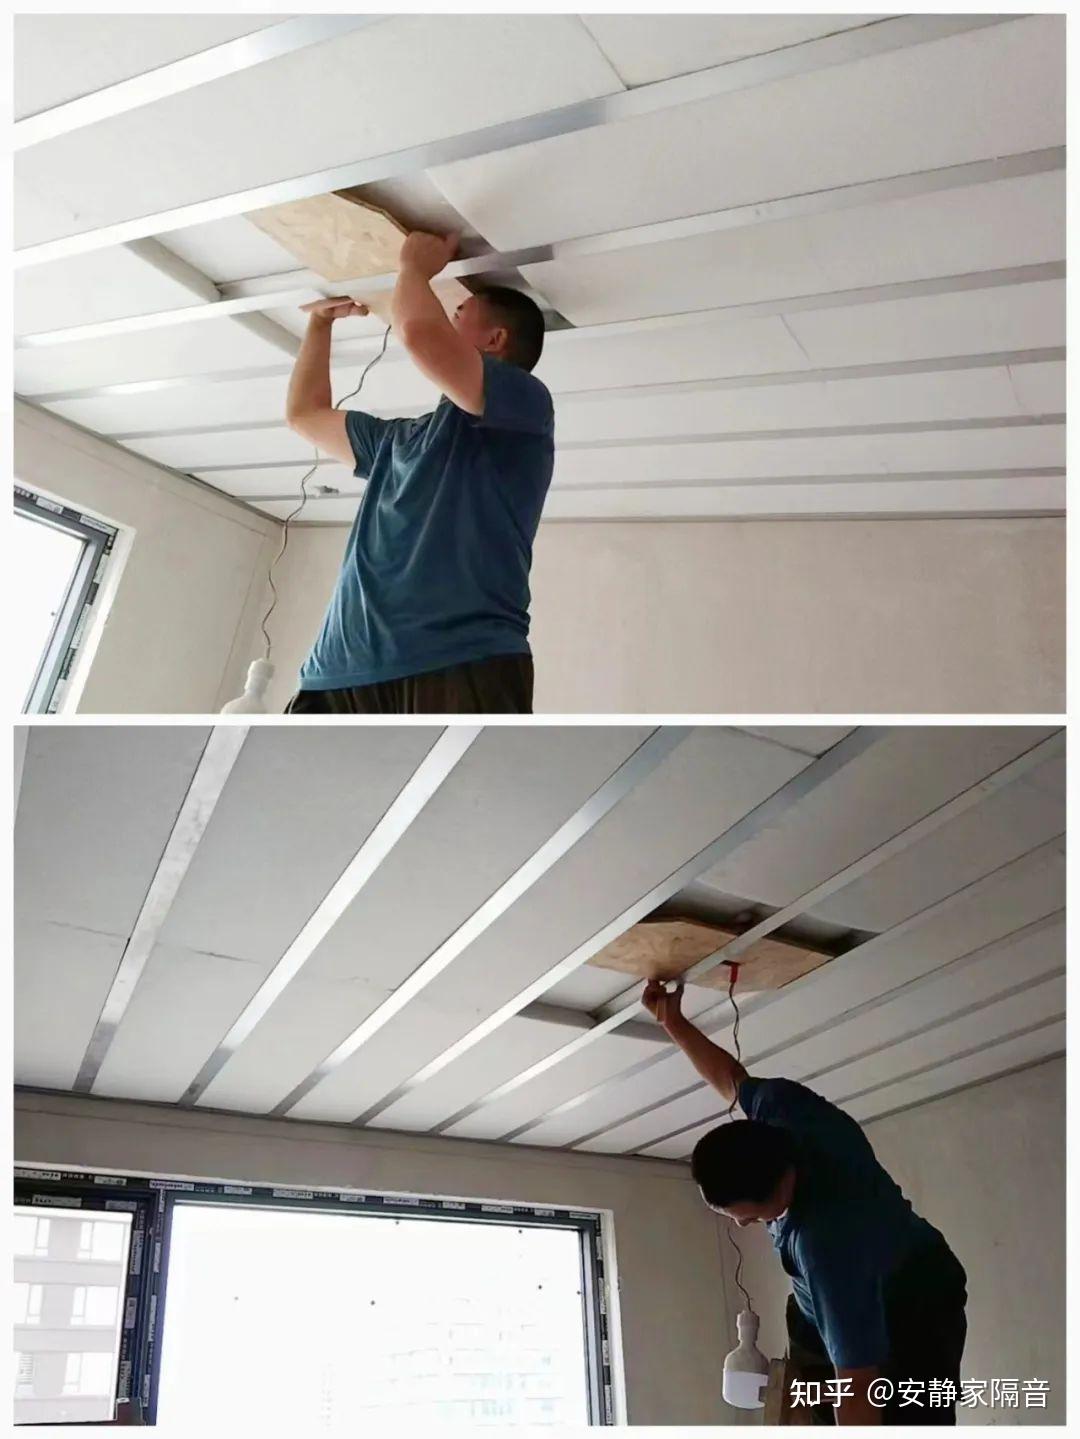 三个卧室做天花板隔音装修同步打造悬浮隔振隔声吊顶安静家隔音 - 知乎